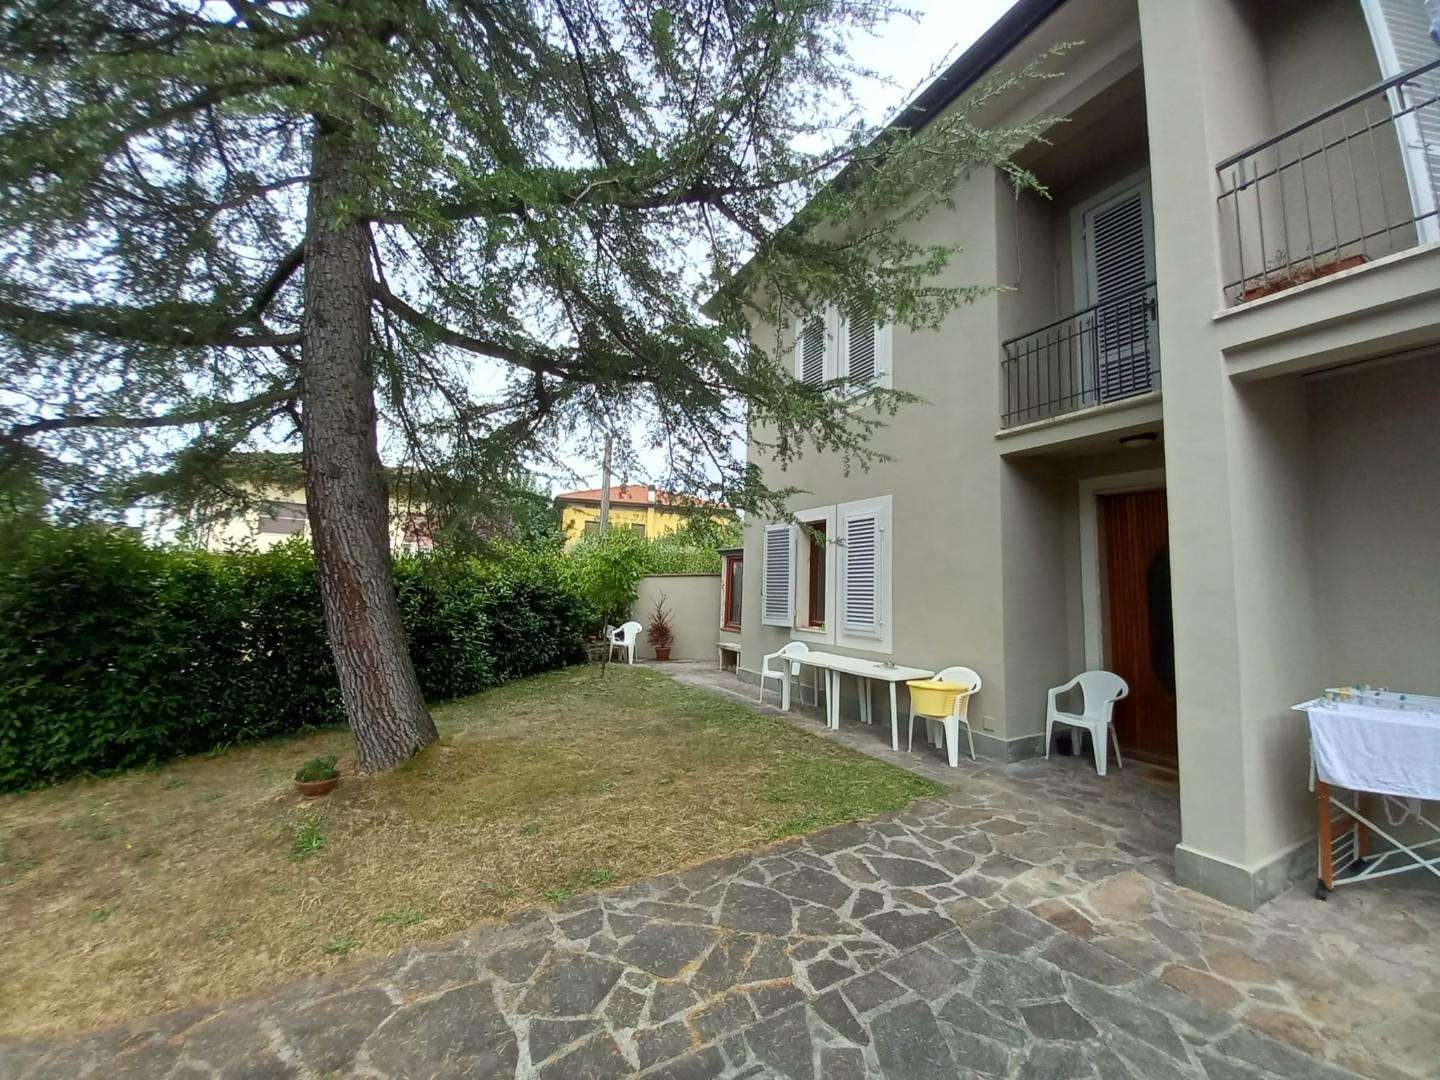 Casa Bi - Trifamiliare in Vendita a Capannori Camigliano,